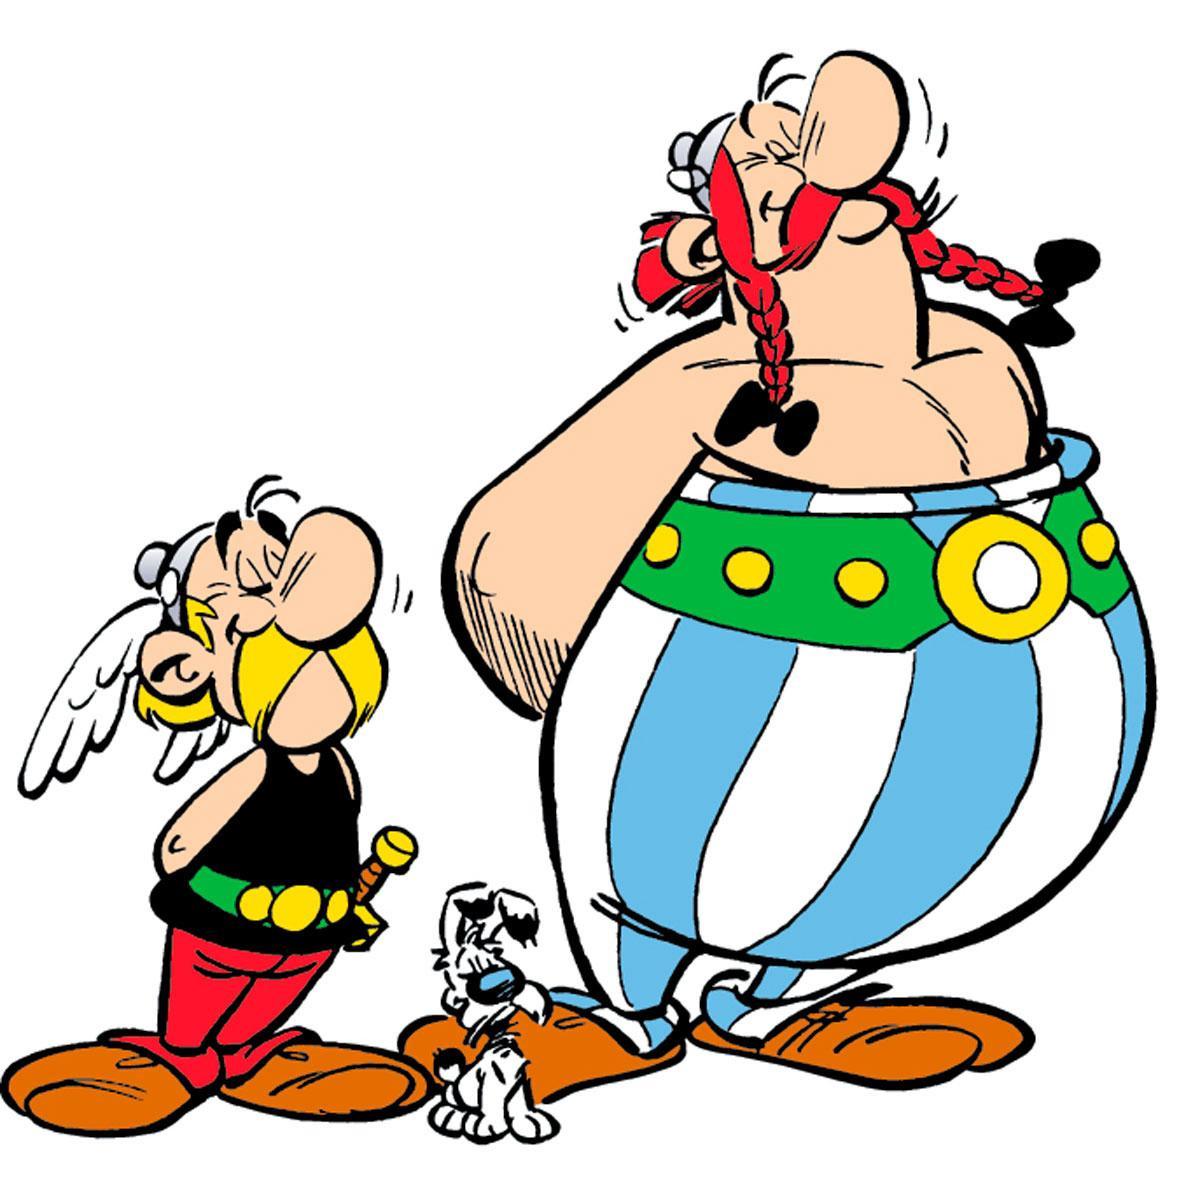 Walter Pauli neemt afscheid van Asterix-tekenaar Albert Uderzo: de man van de menhirs